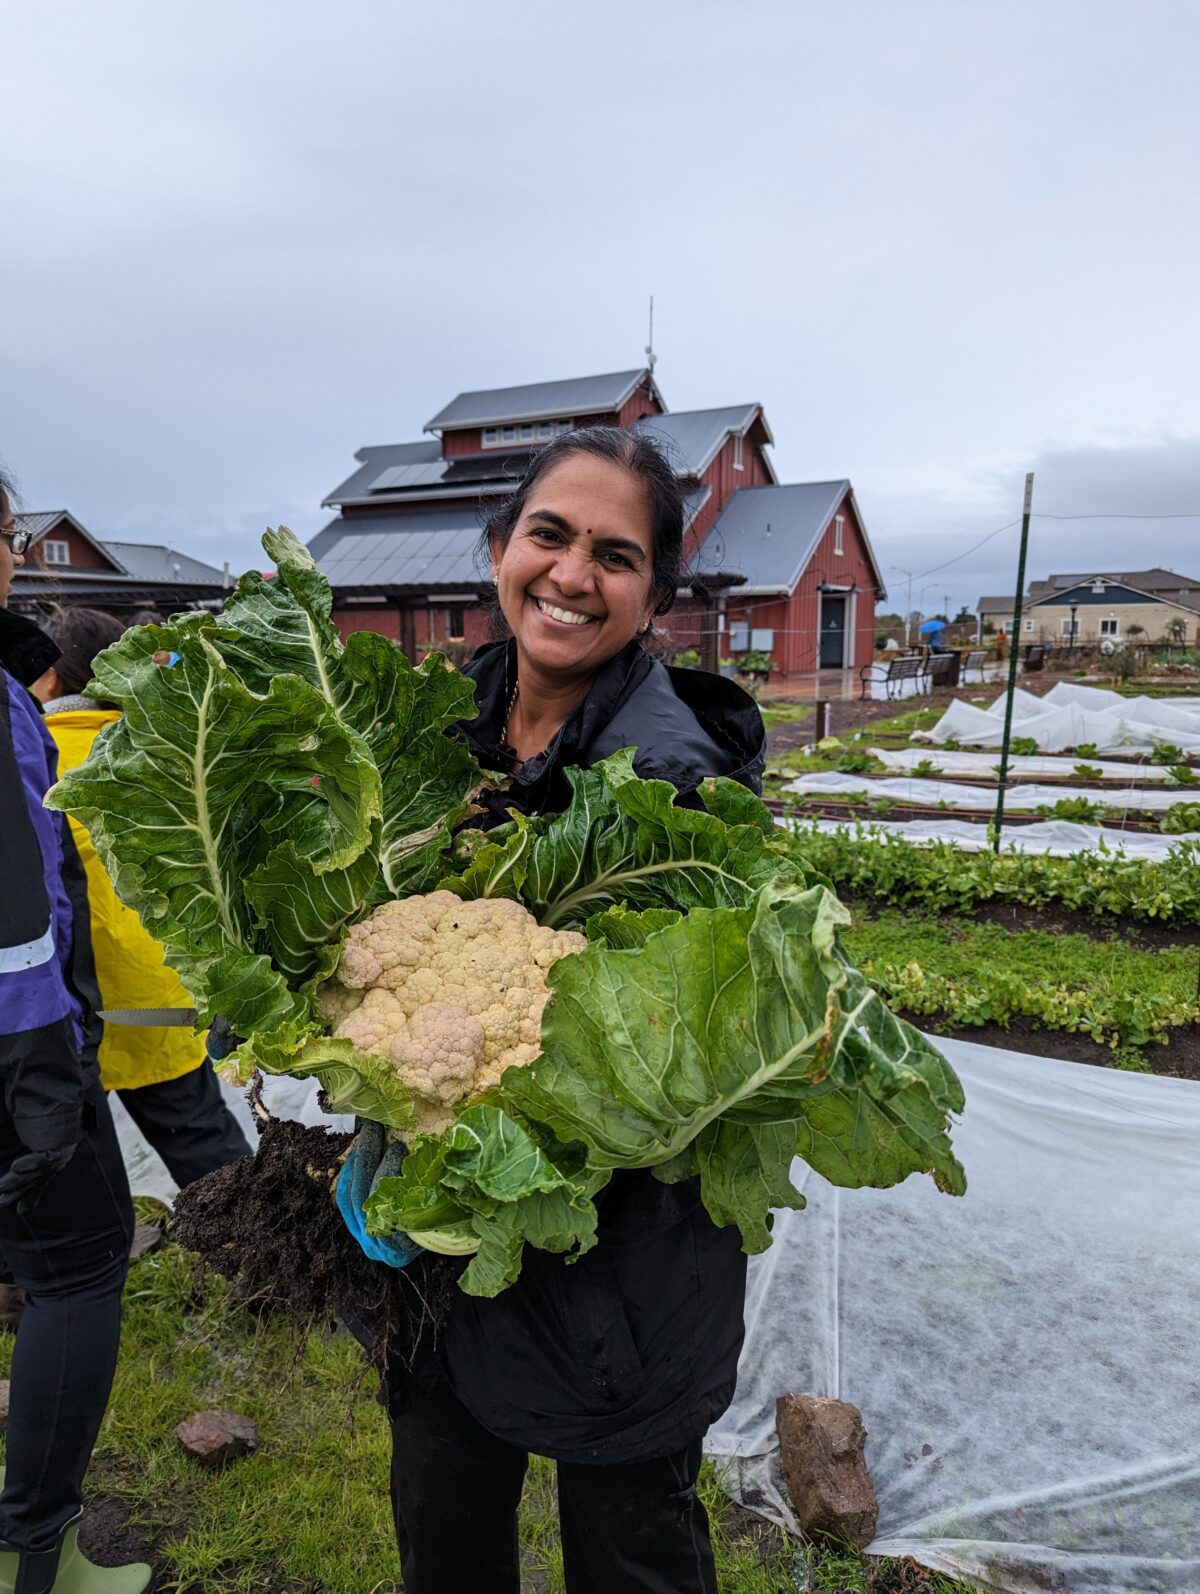 A woman holding a huge cauliflower